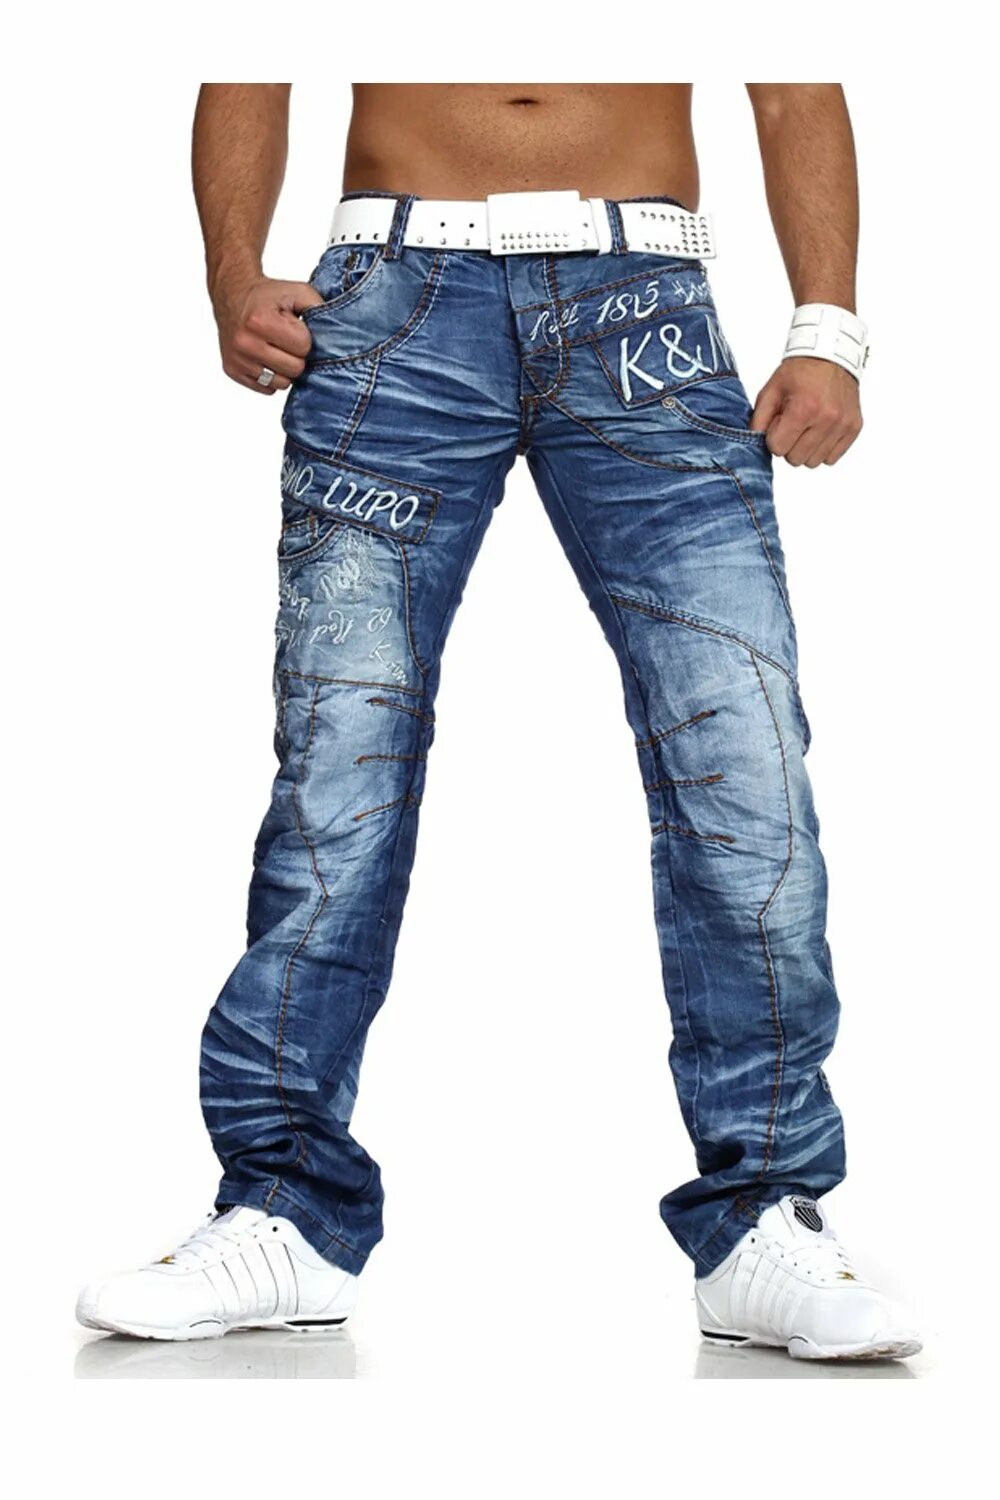 Мужские джинсы. Стильные мужские джинсы. Джинсы мужские модные. Необычные джинсы мужские. Купить мужские джинсы оригиналы в москве